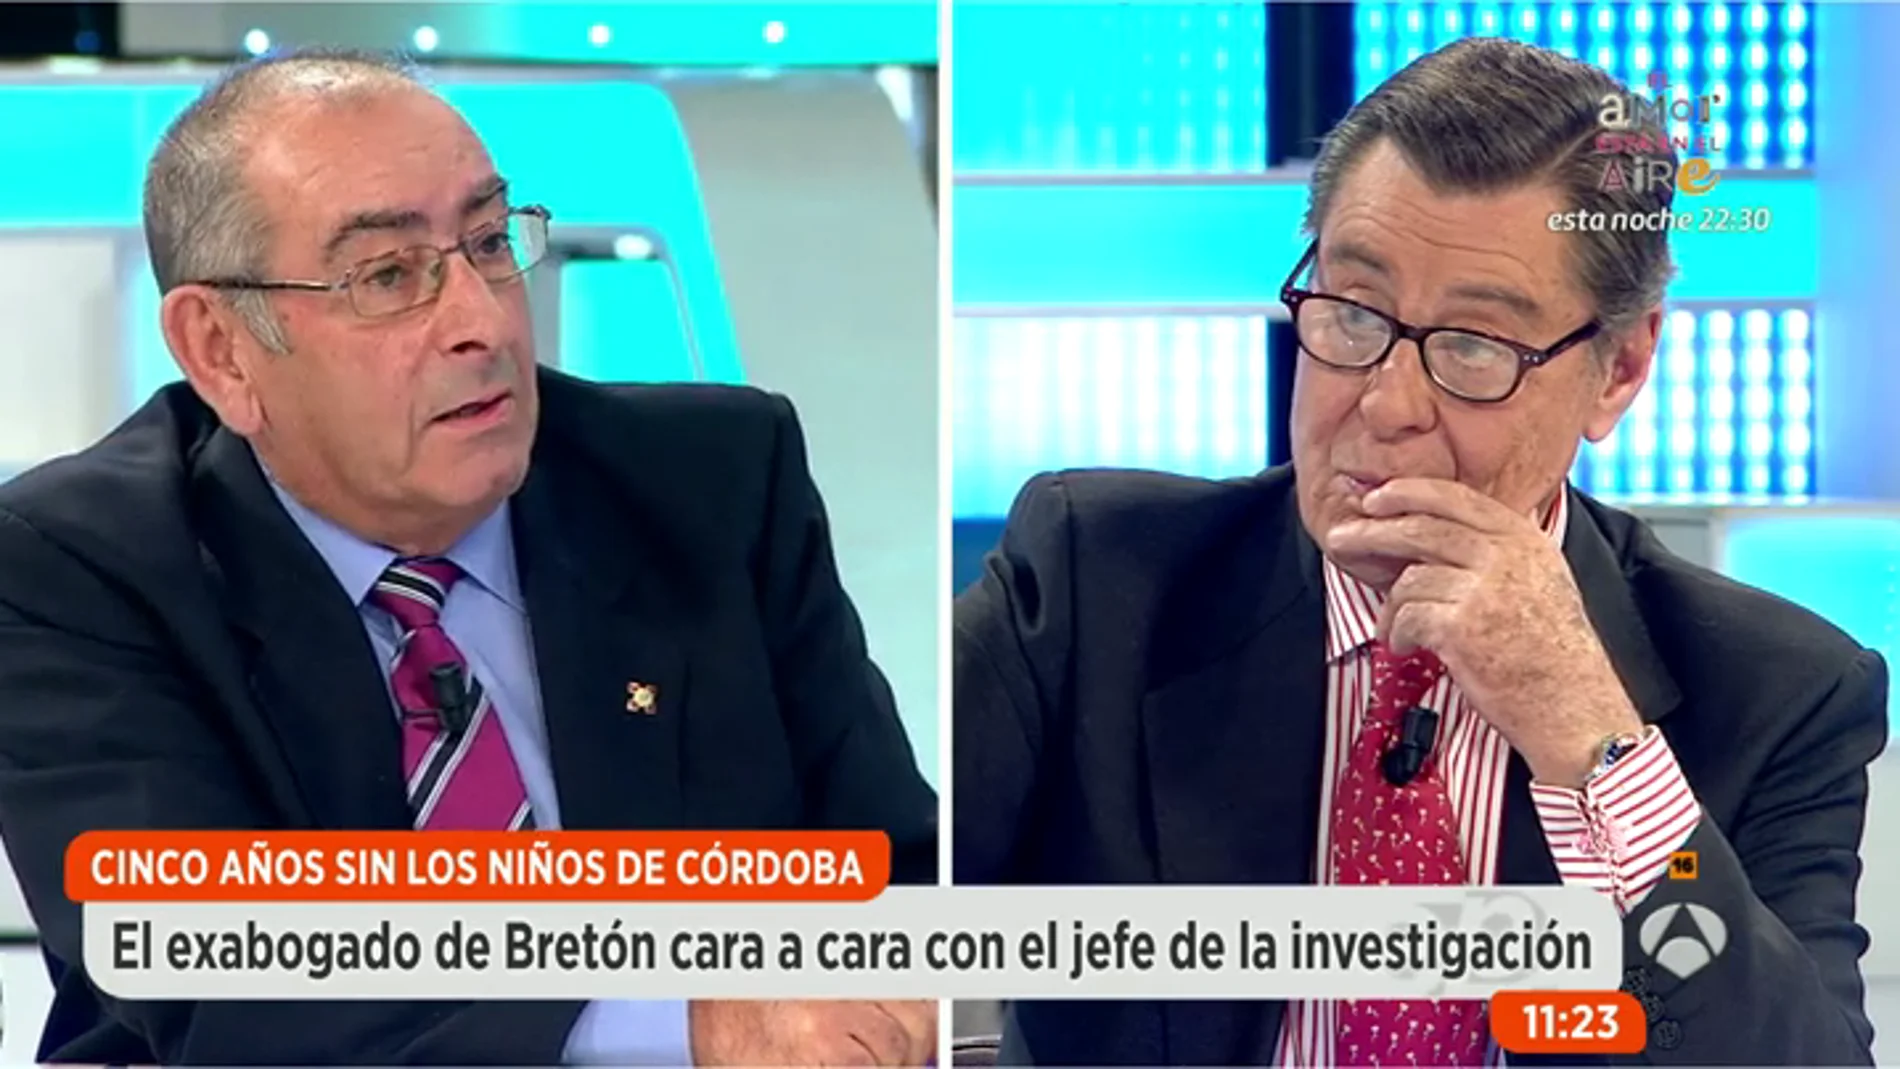 El exabogado de Bretón cree que alguien manipuló los huesos de los niños de Córdoba